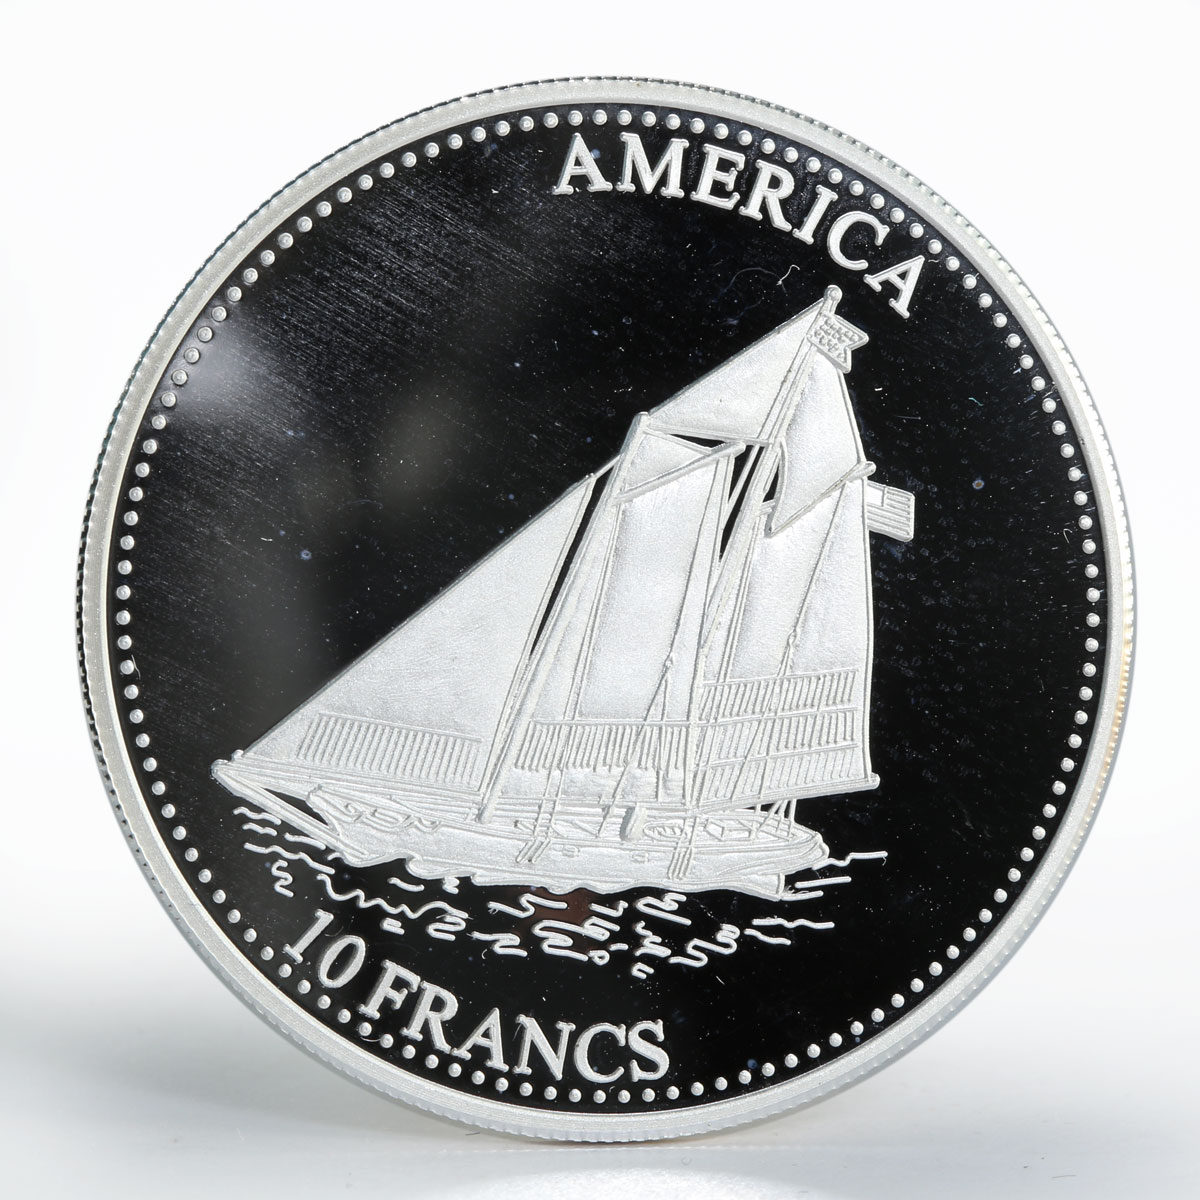 Congo 10 francs Ship America silver proof coin 2001